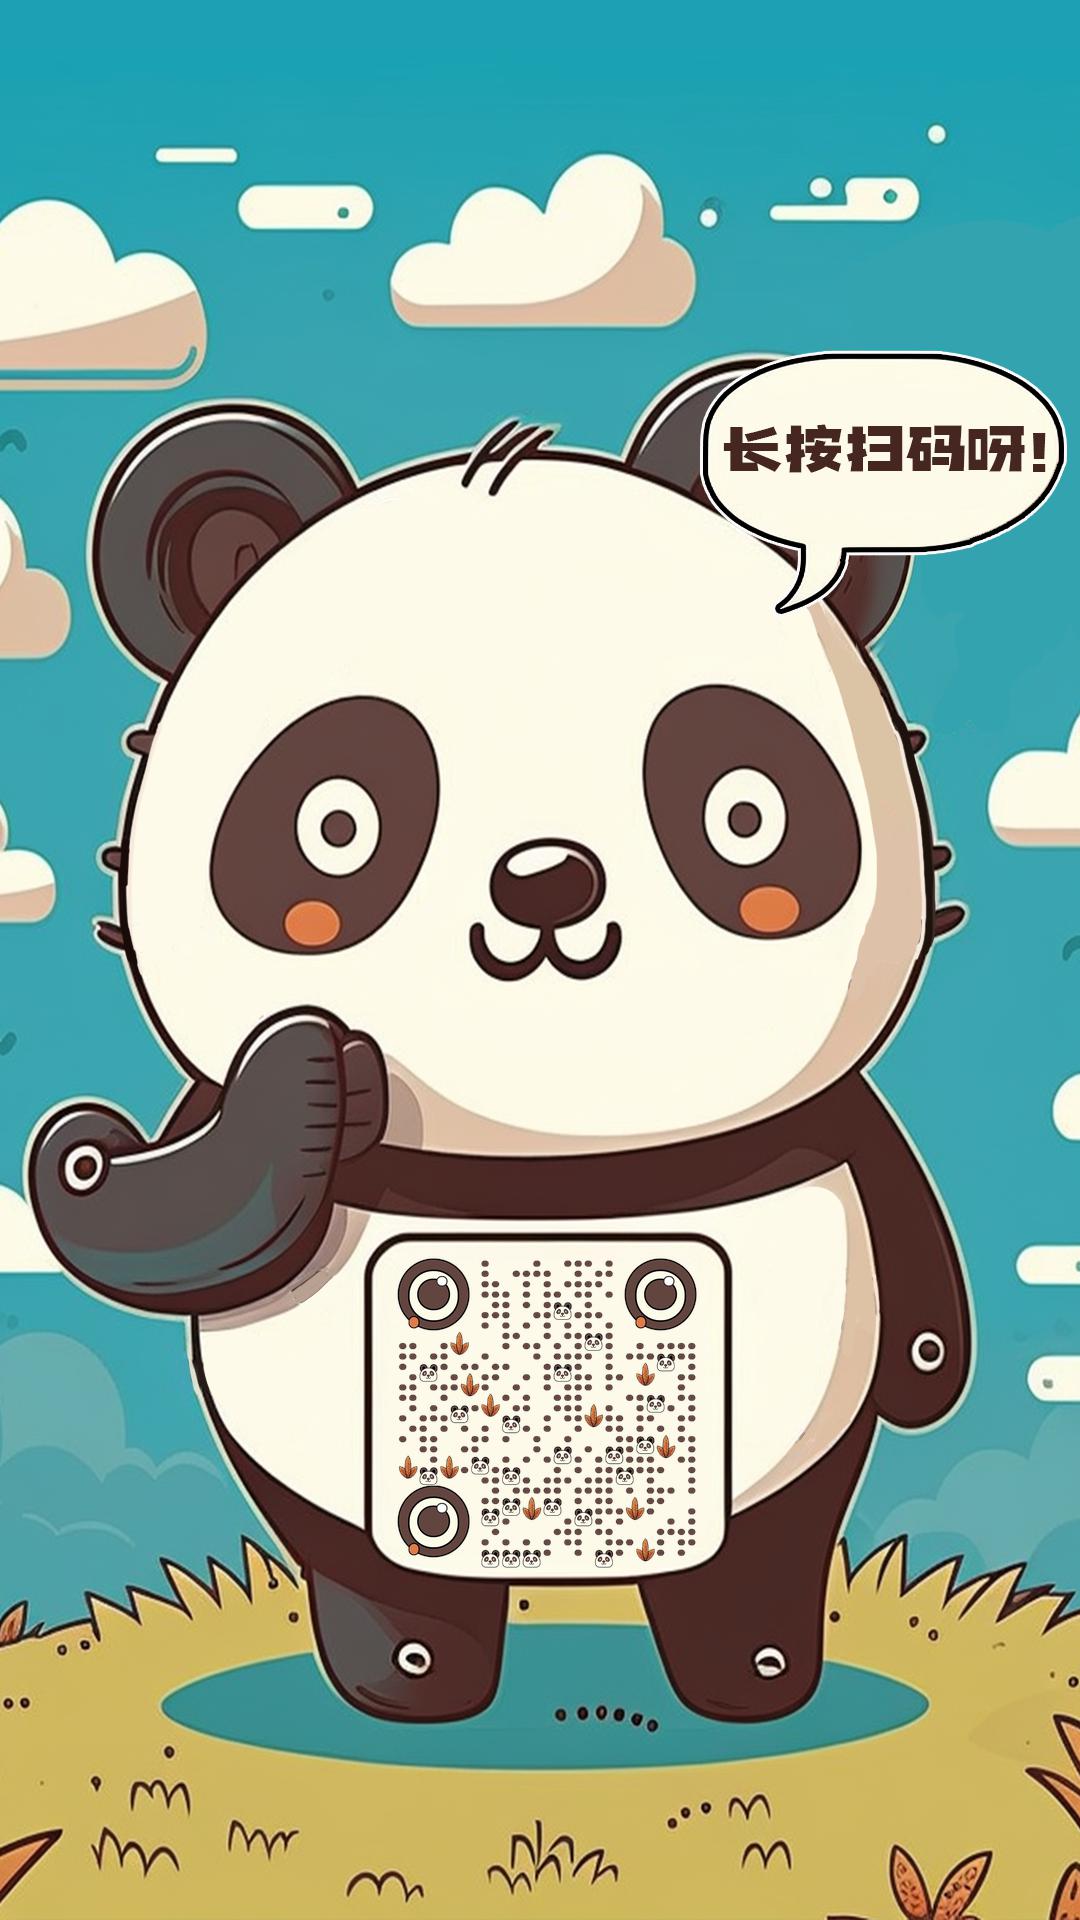 卡通插画风格个性皮肤熊猫邀请长按扫码加好友二维码生成器-平面静态-手机海报